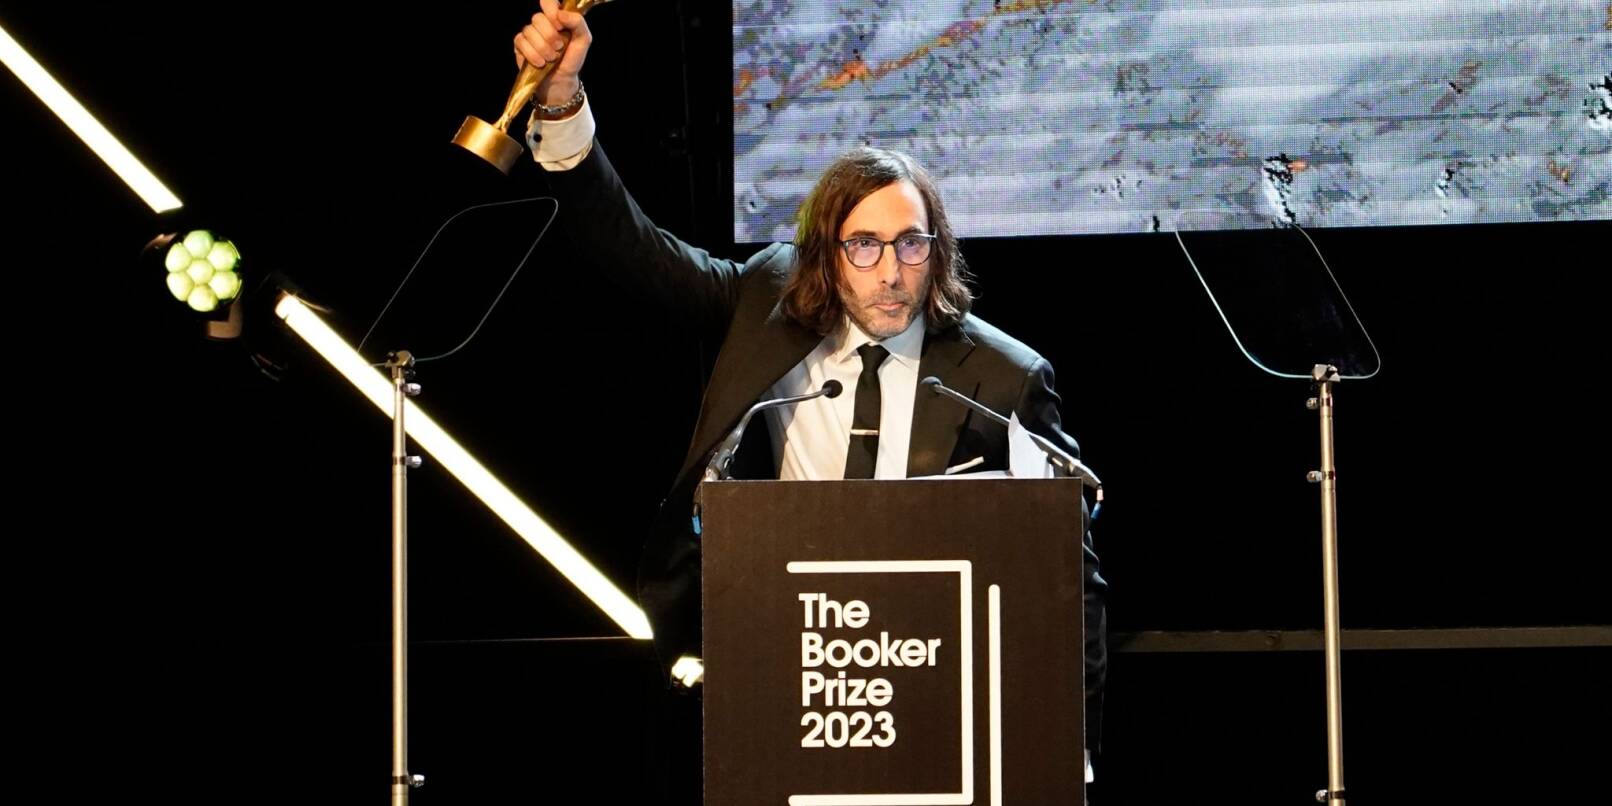 Paul Lynch, Gewinner des Booker Prize 2023, feiert kurz nach der Bekanntgabe auf der Bühne in London.